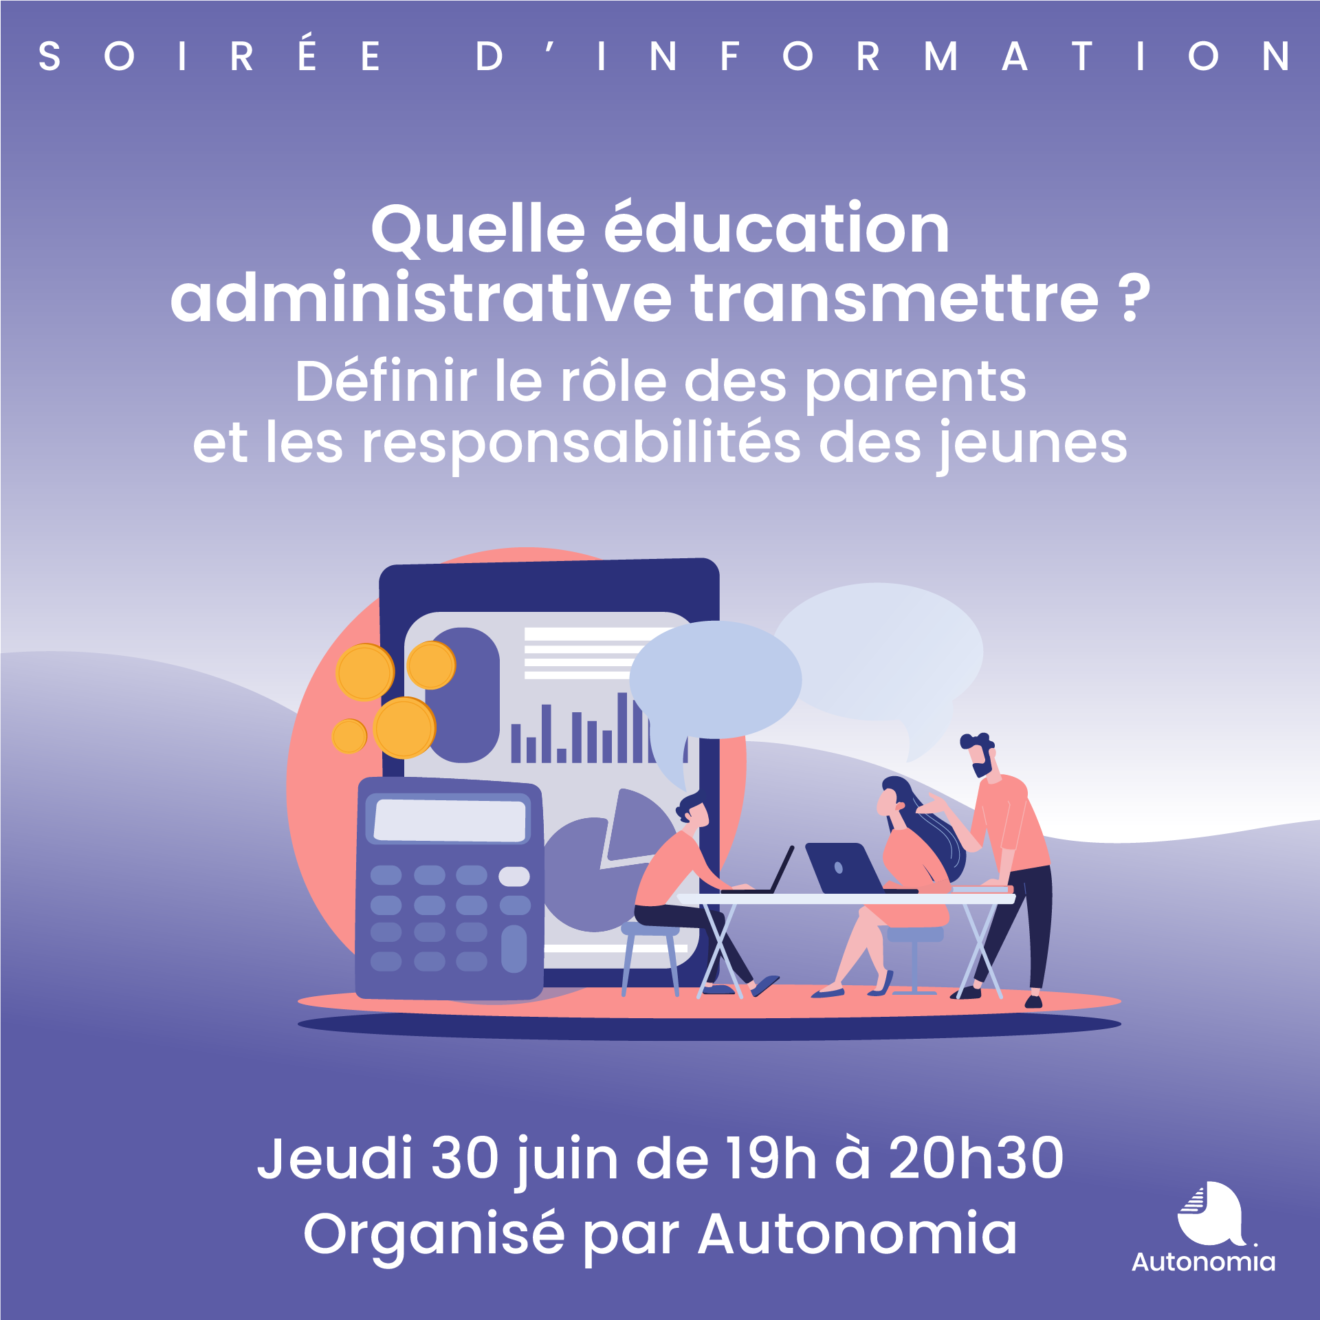 Soirée d'information | Quelle éducation administrative transmettre ? | 30 juin